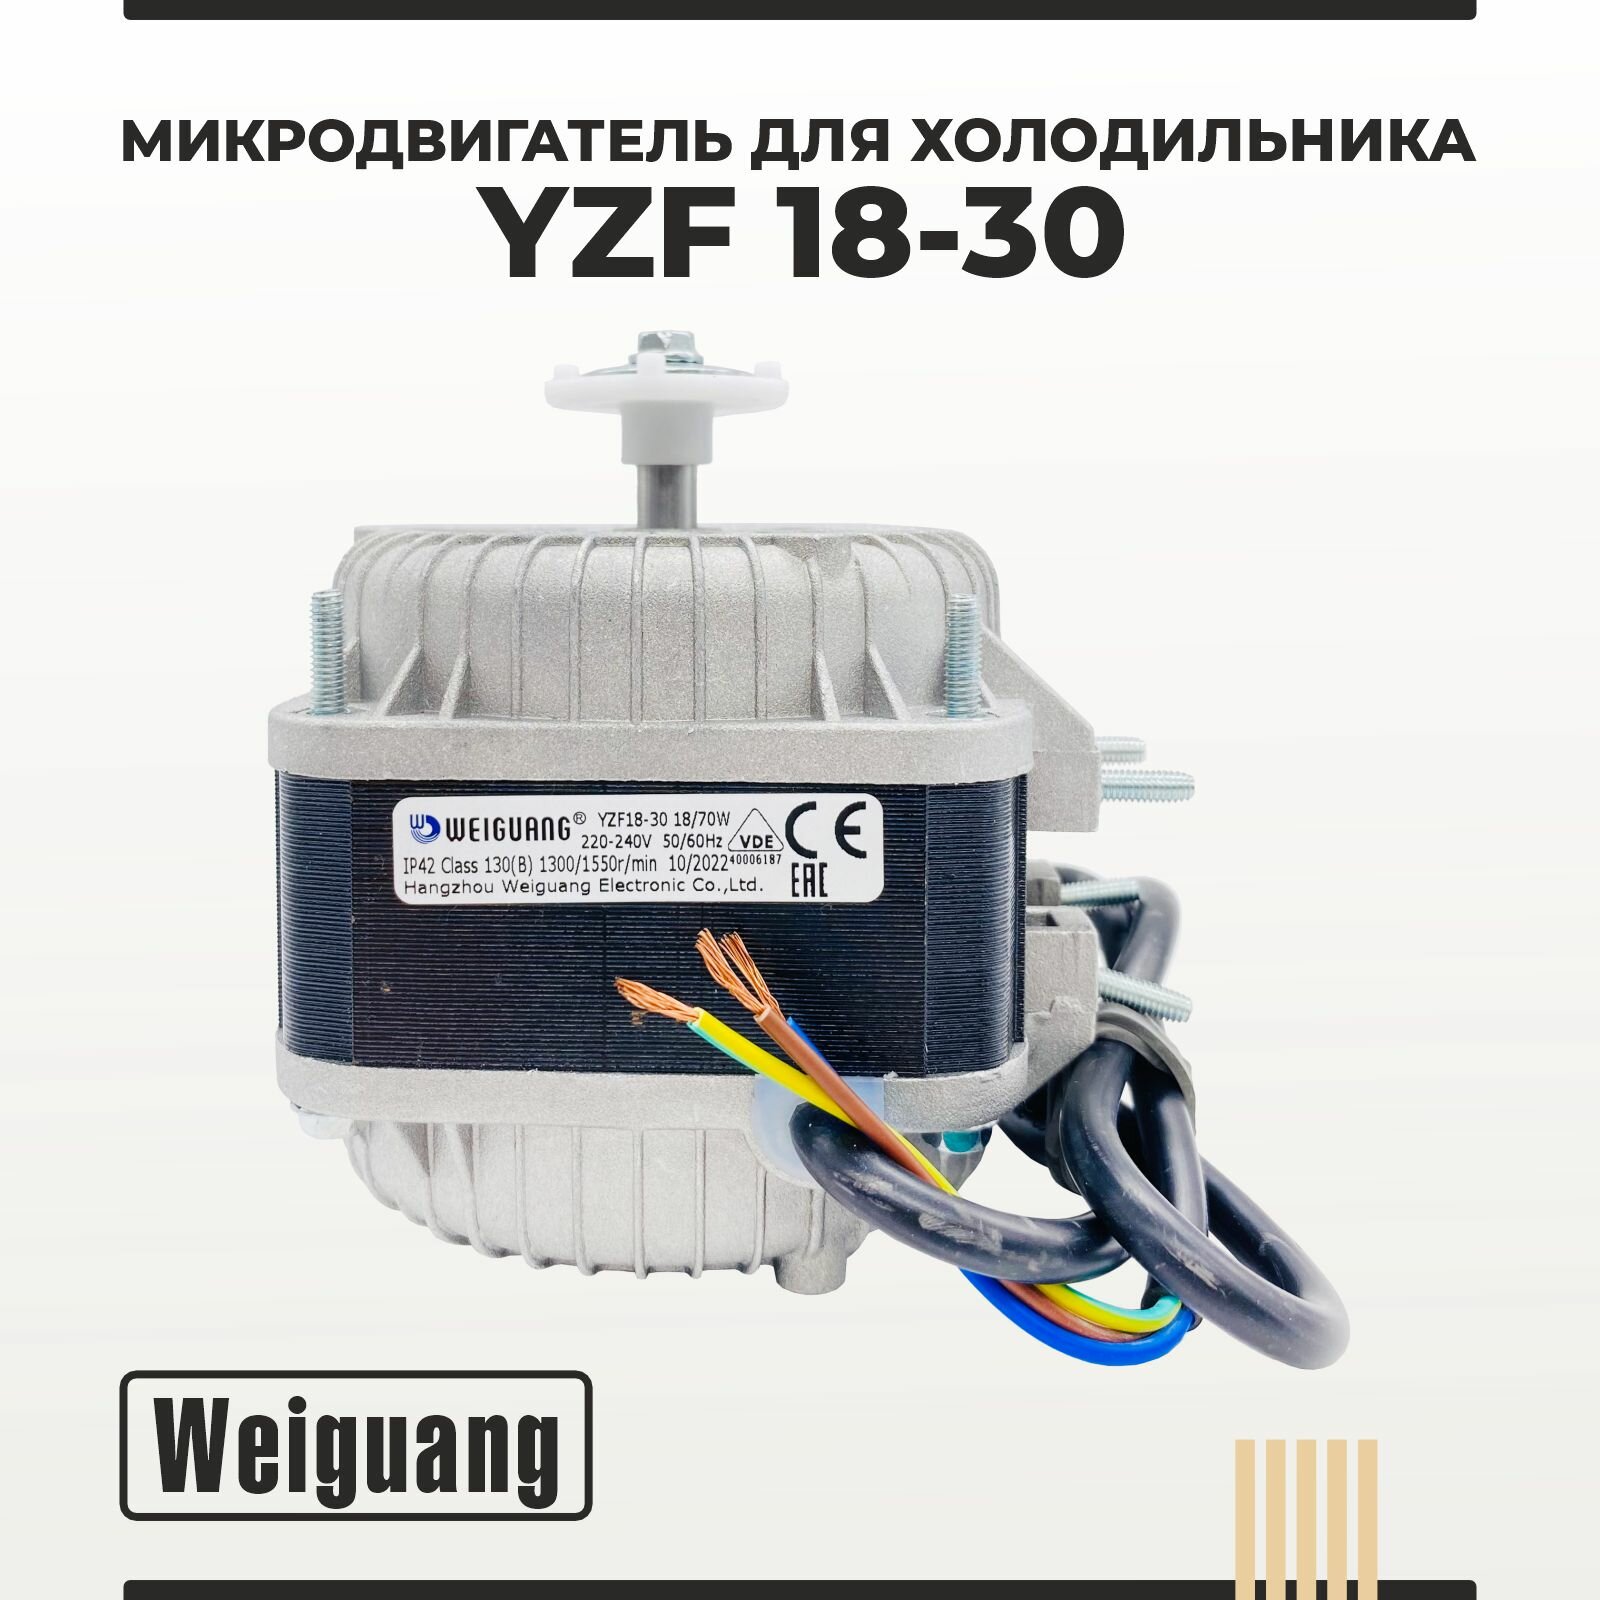 Микродвигатель/ электромотор для холодильника Weiguang YZF18-30 18Вт VDE